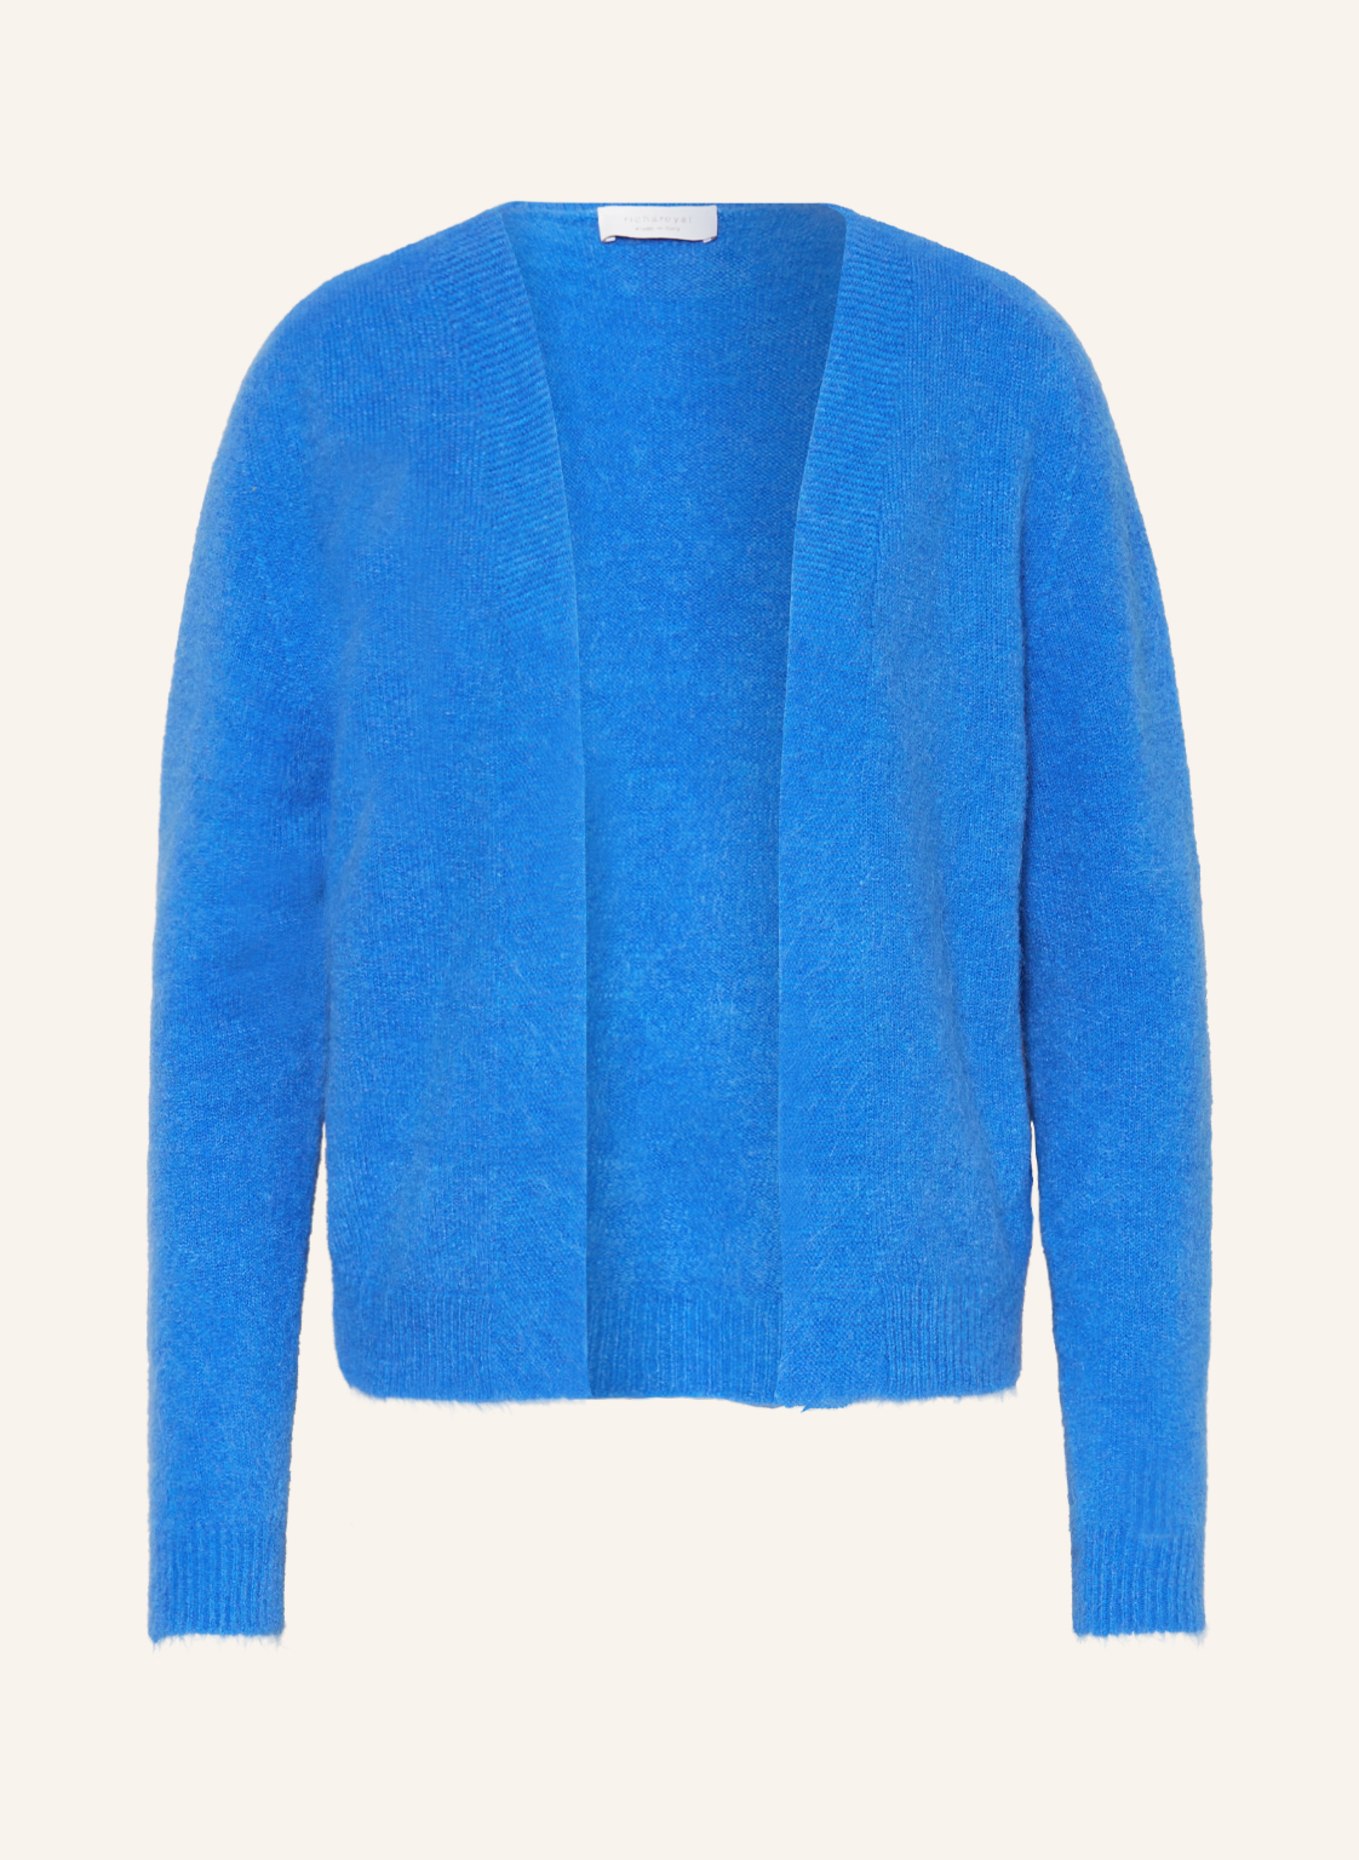 rich&royal Knit cardigan, Color: BLUE (Image 1)